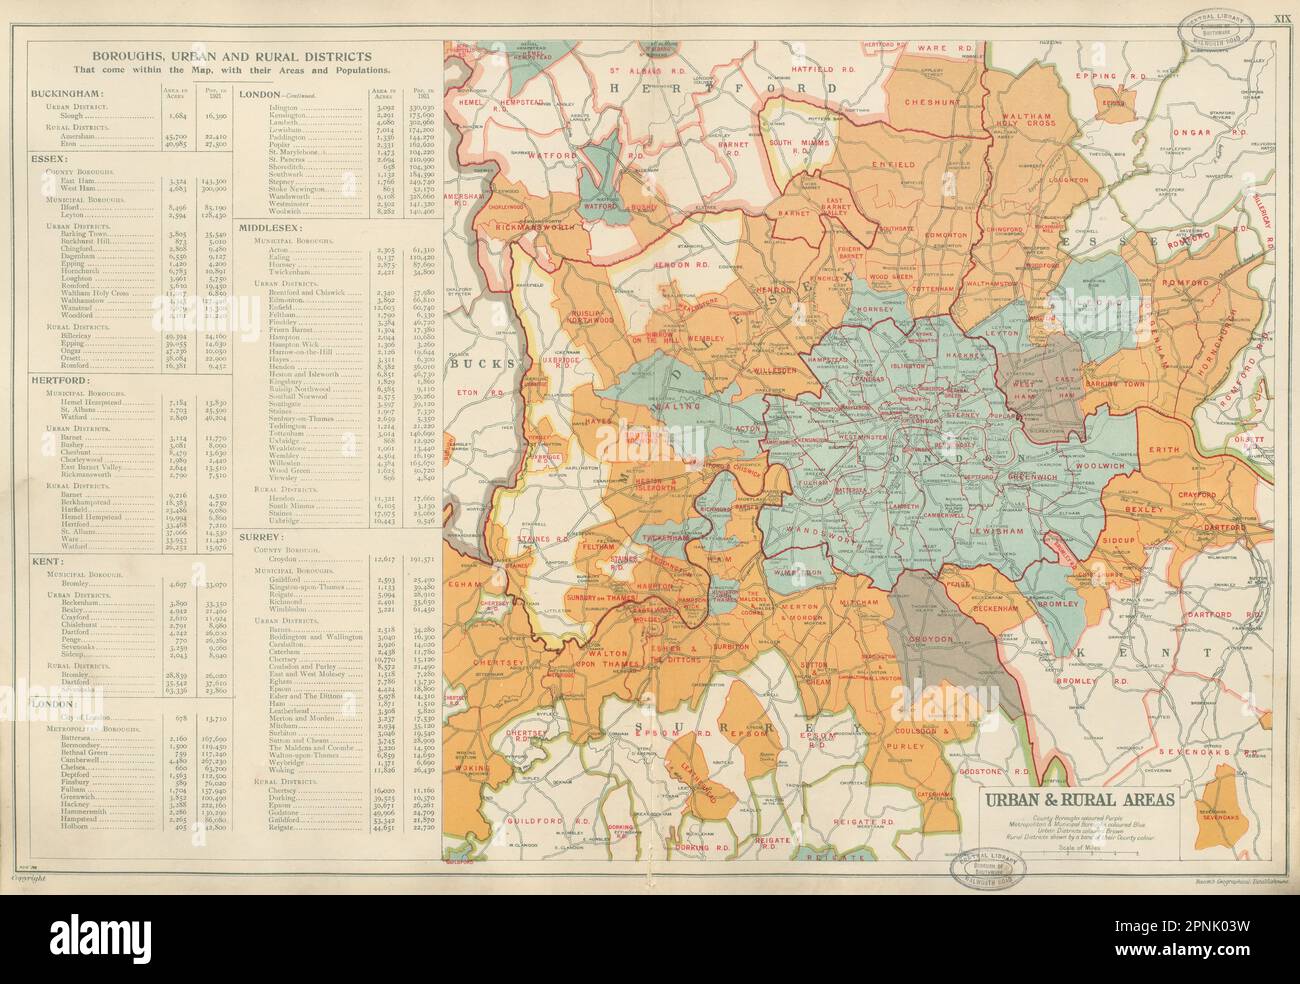 NACH LONDON. Stadtbezirke, Stadtbezirke und ländliche Gebiete. SPECK 1934 alte Karte Stockfoto